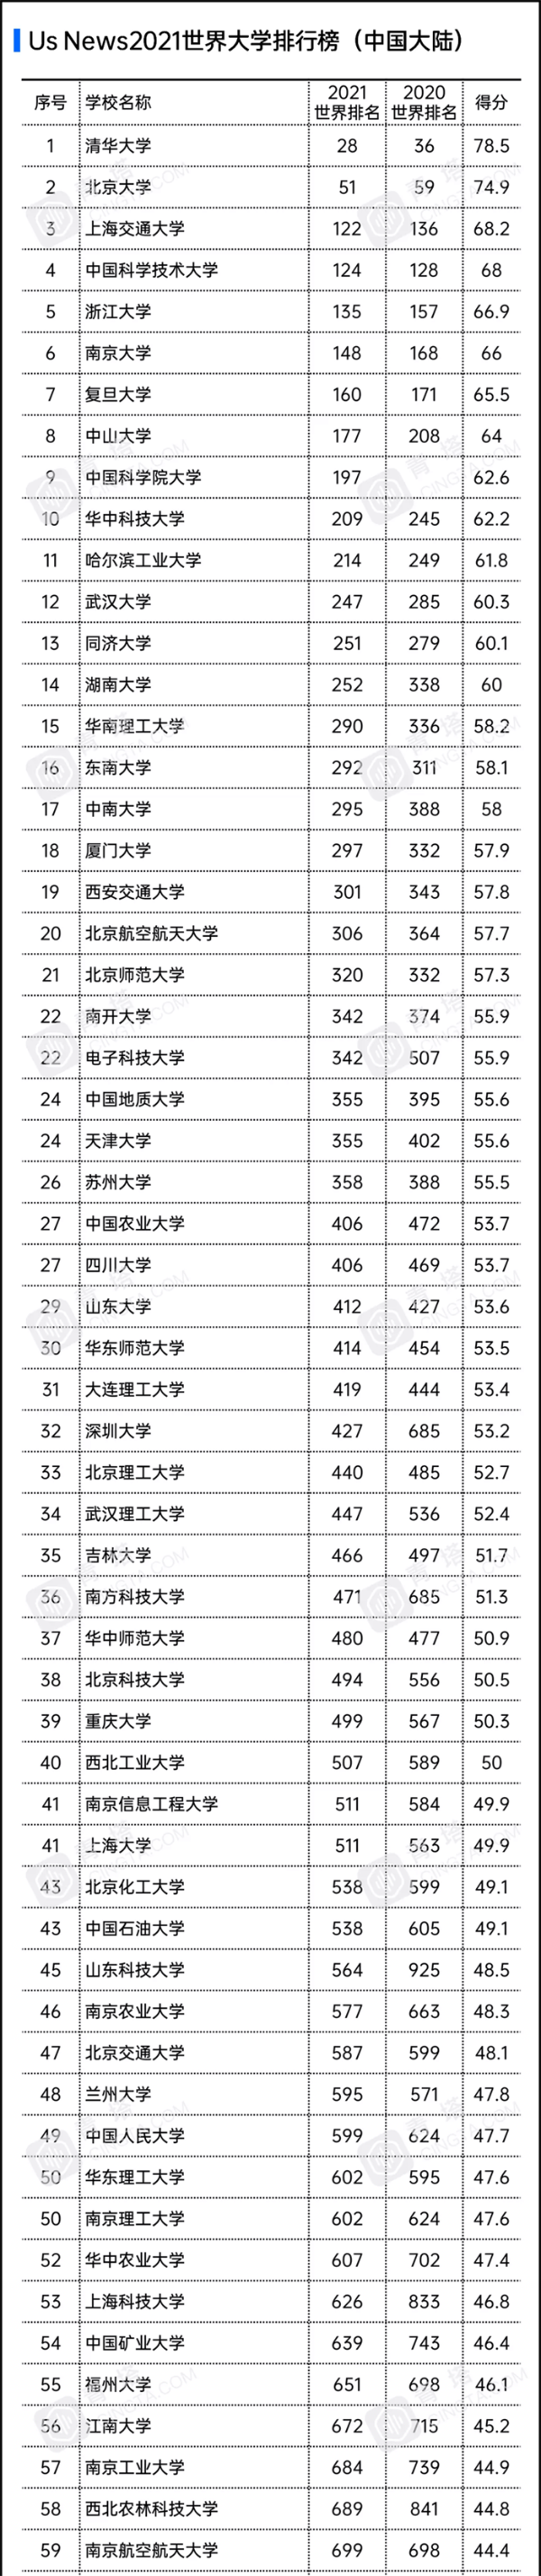 2021 US News世界大学排行榜：中国内地176所上榜，清华全球第28亚洲第一（附榜单）